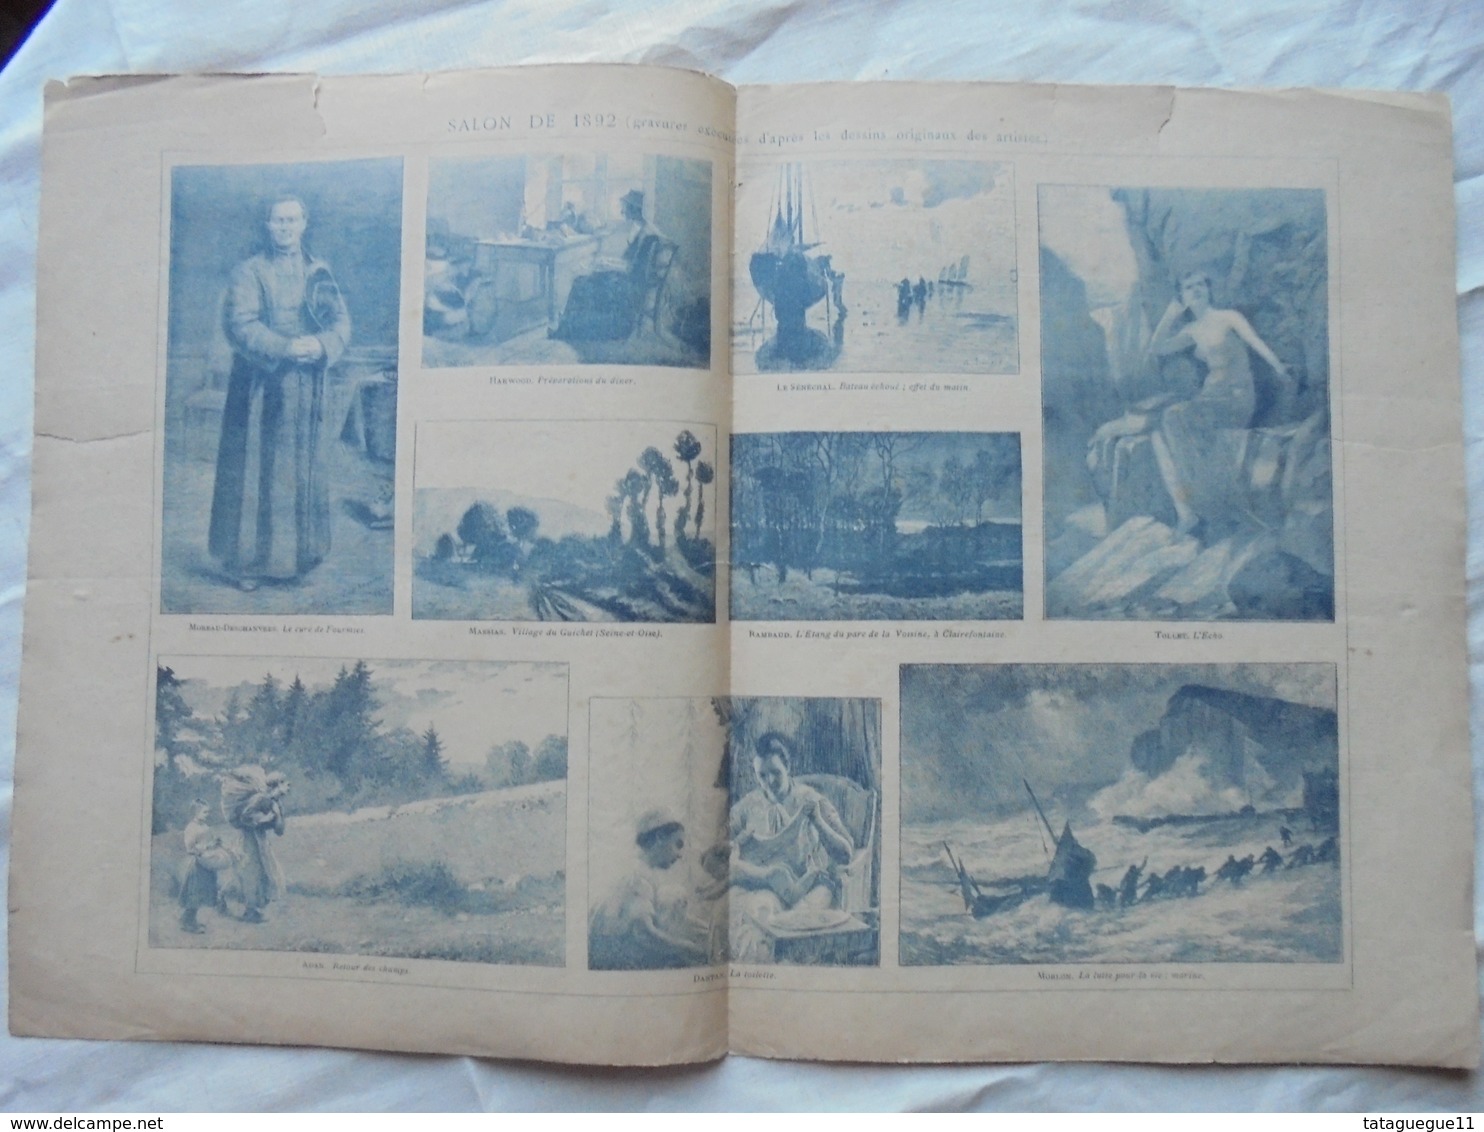 Ancien - Double Page Supplément Anales Politiques Et Littéraires N° 462 5/1892 - Revistas & Catálogos